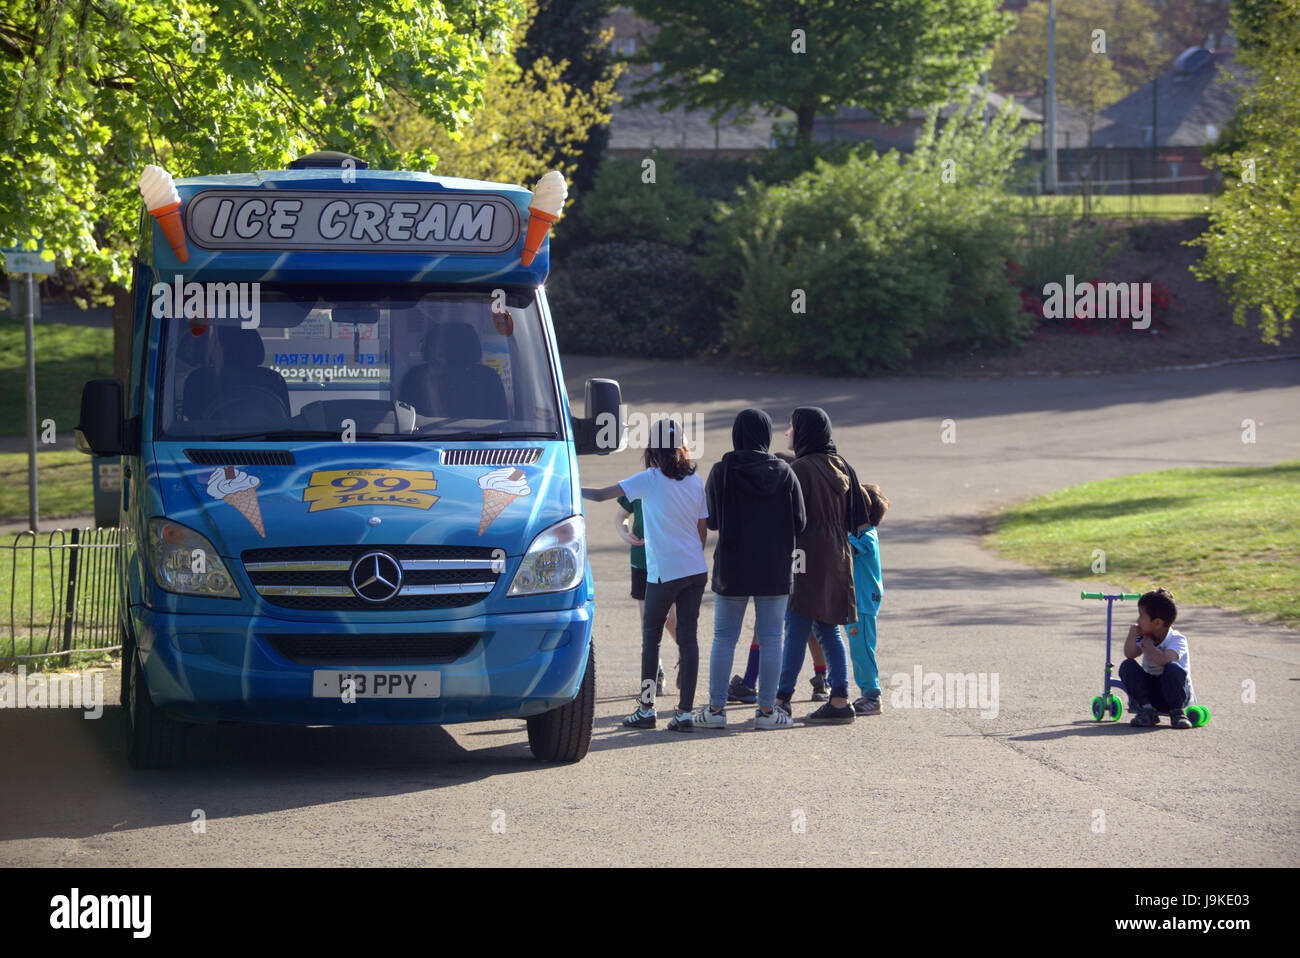 Glasgow Kelvingrove Park ice cream van scènes d'attente de camions Banque D'Images